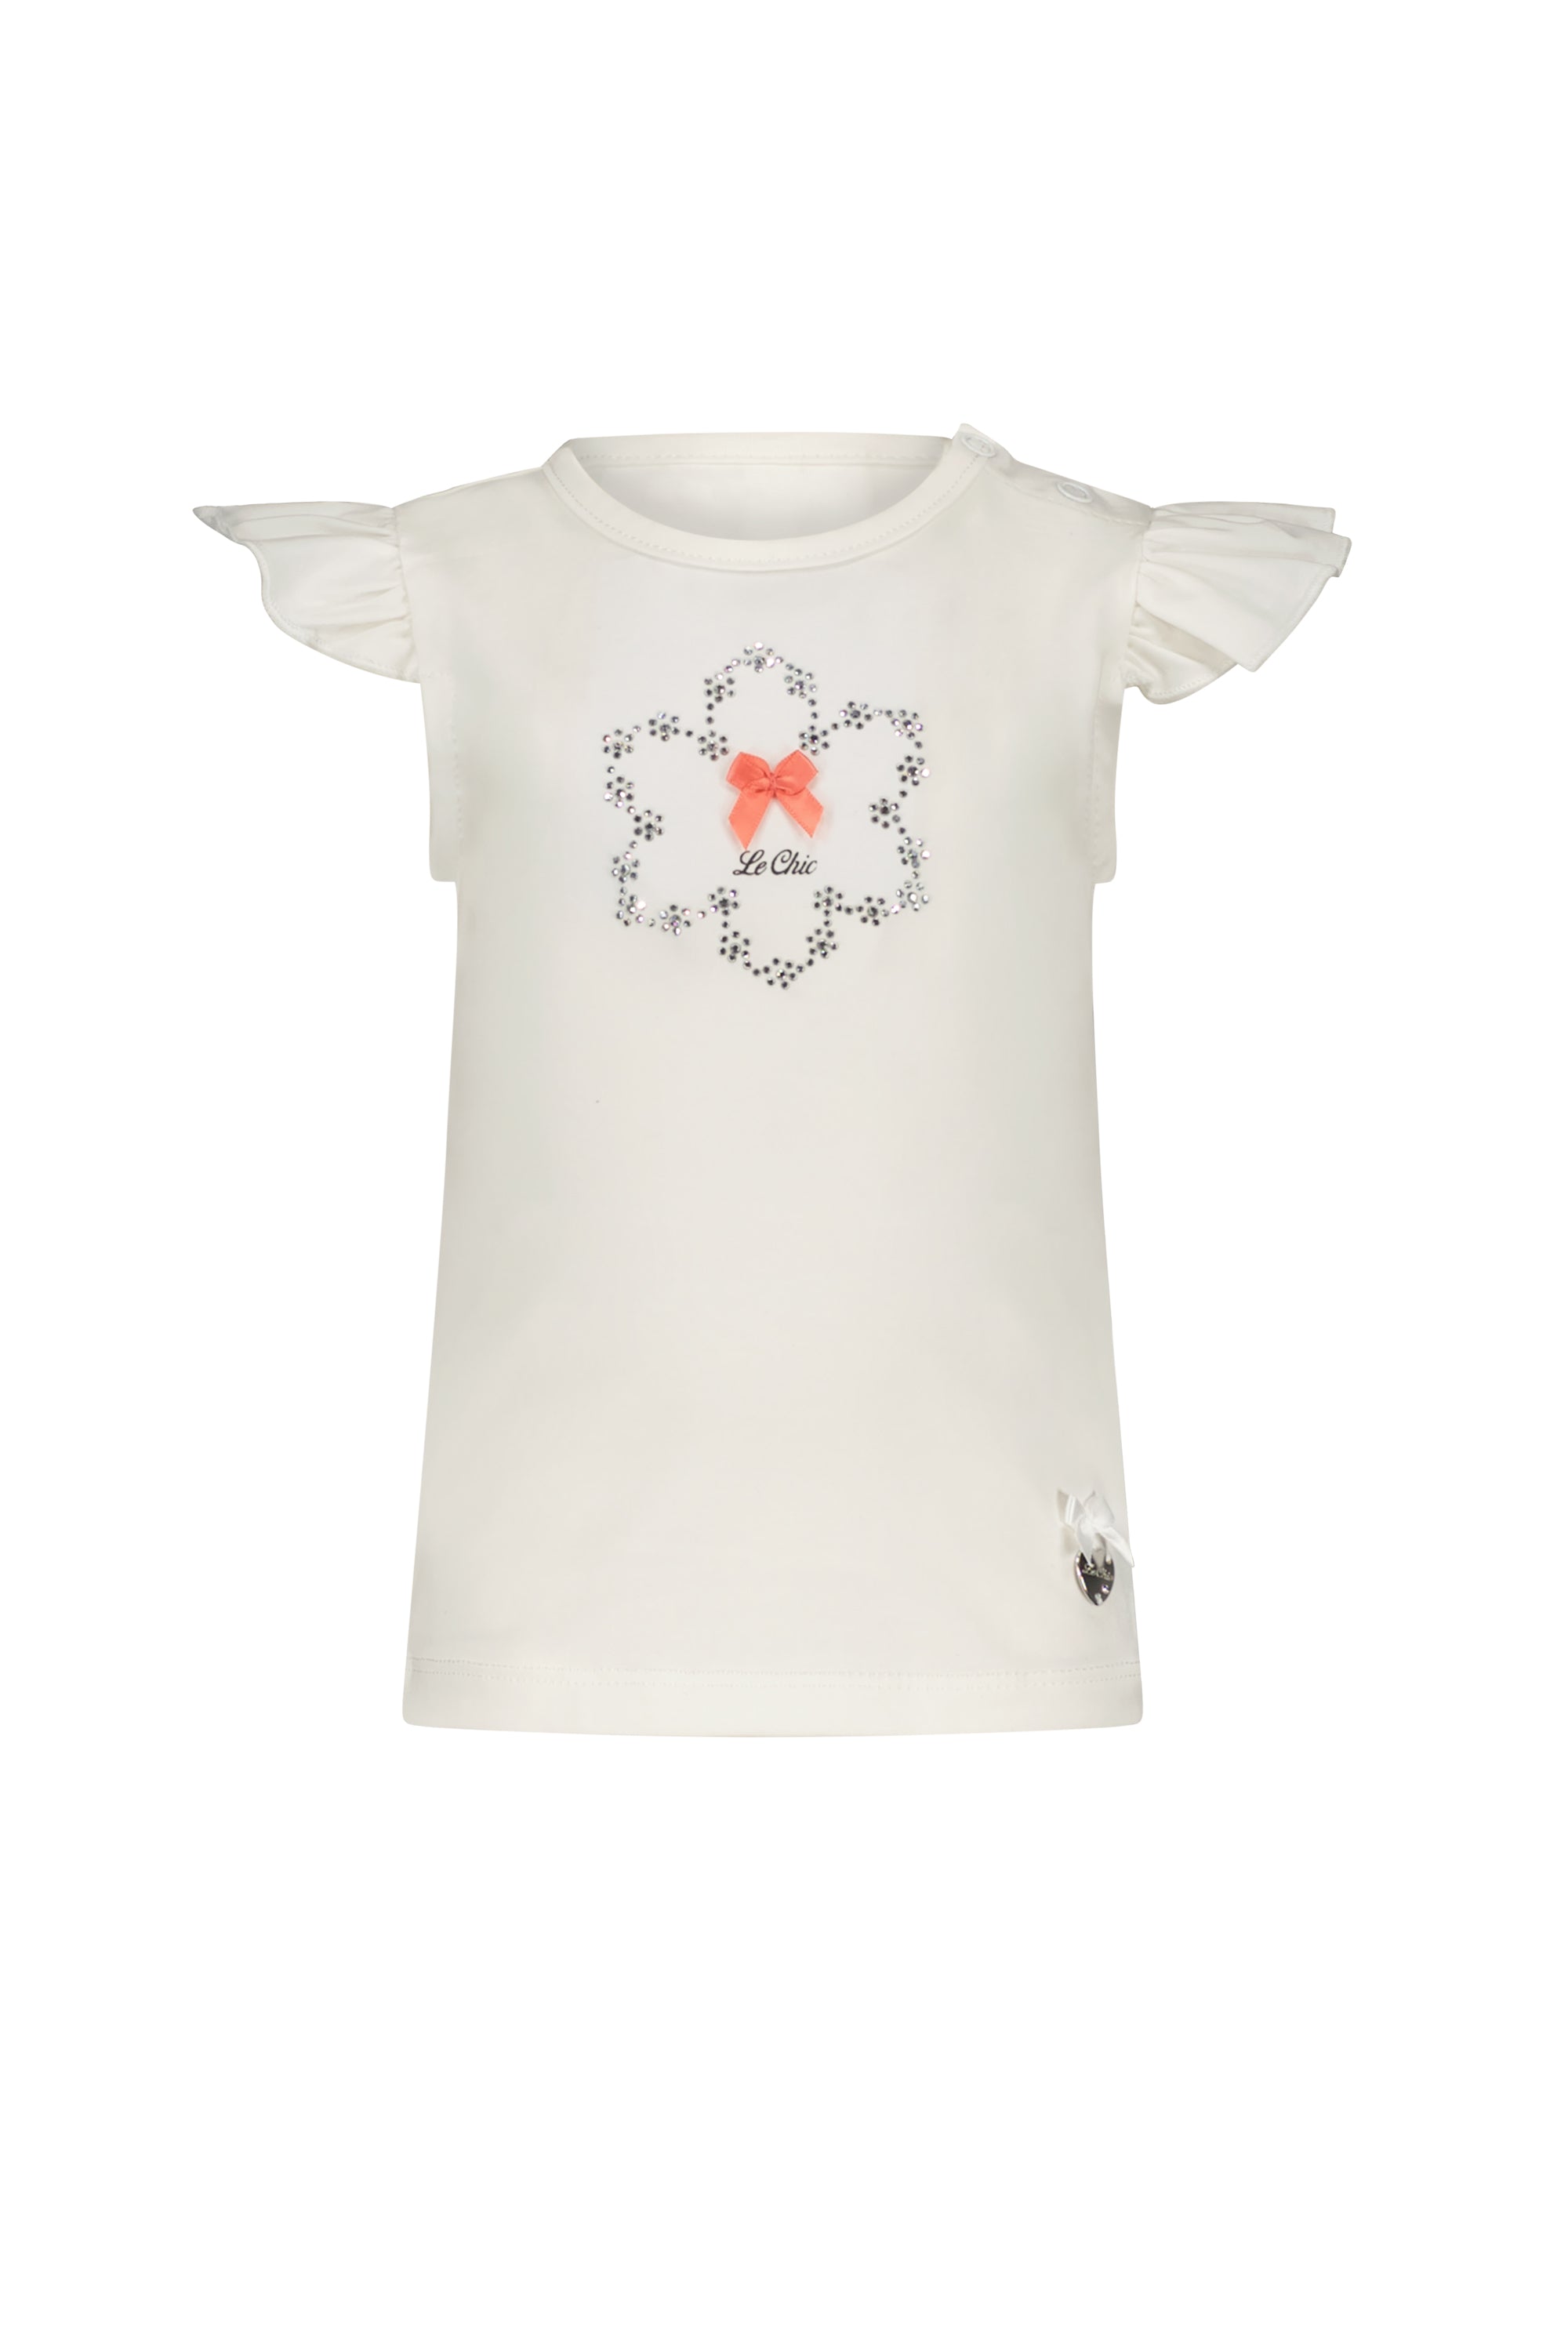 NOSSA daisy rhinestone T-shirt